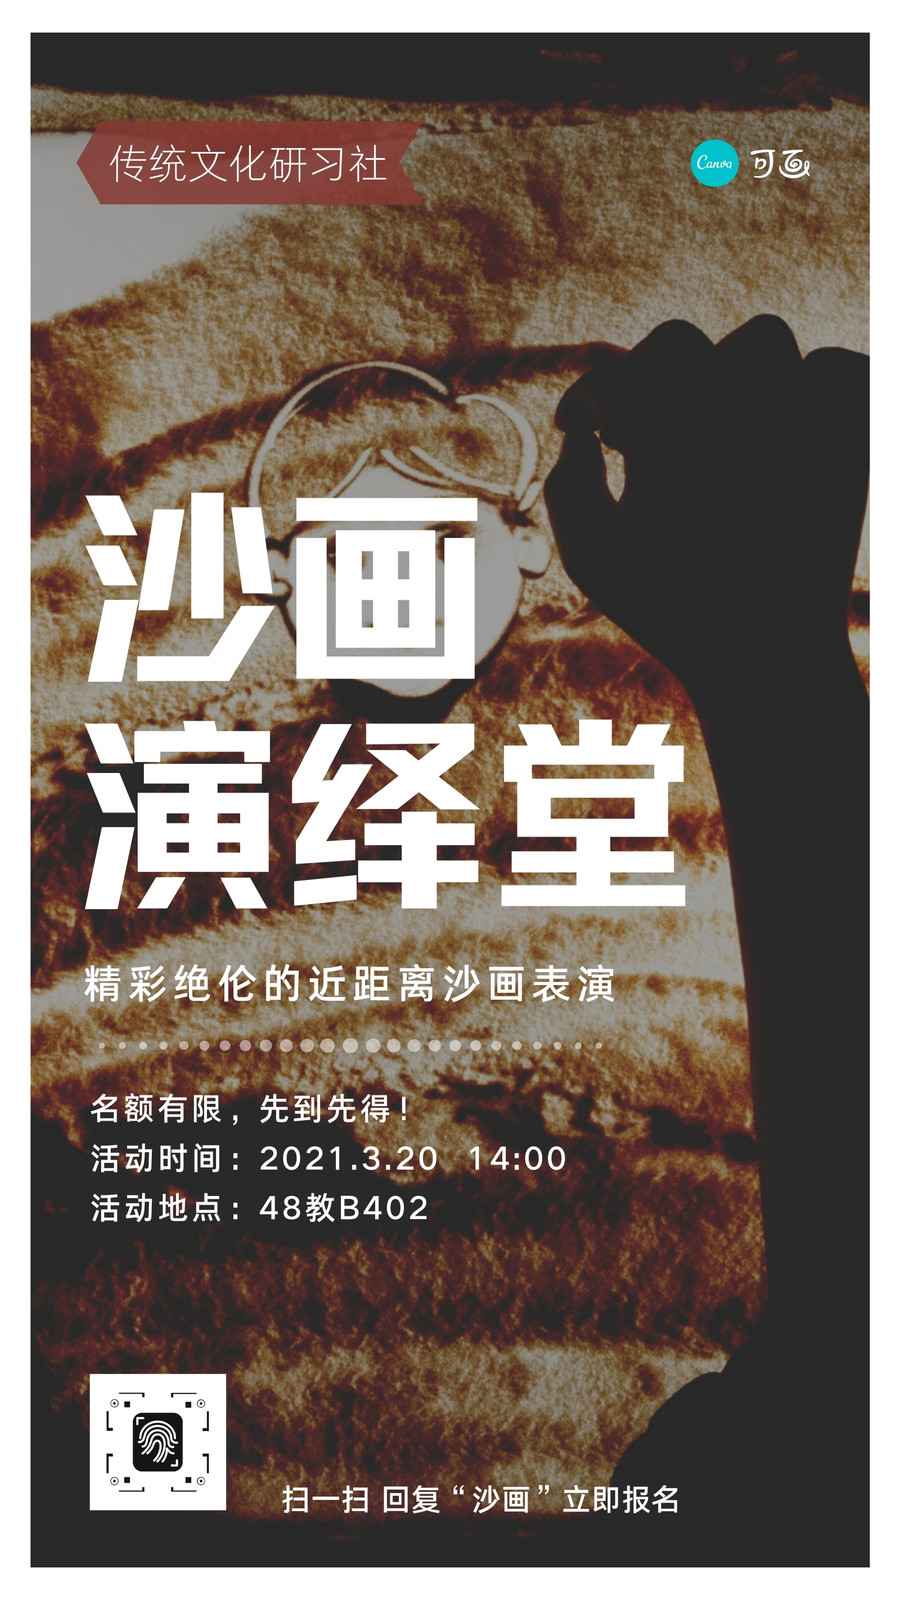 黑褐色沙画照片宣传宣传中文手机海报